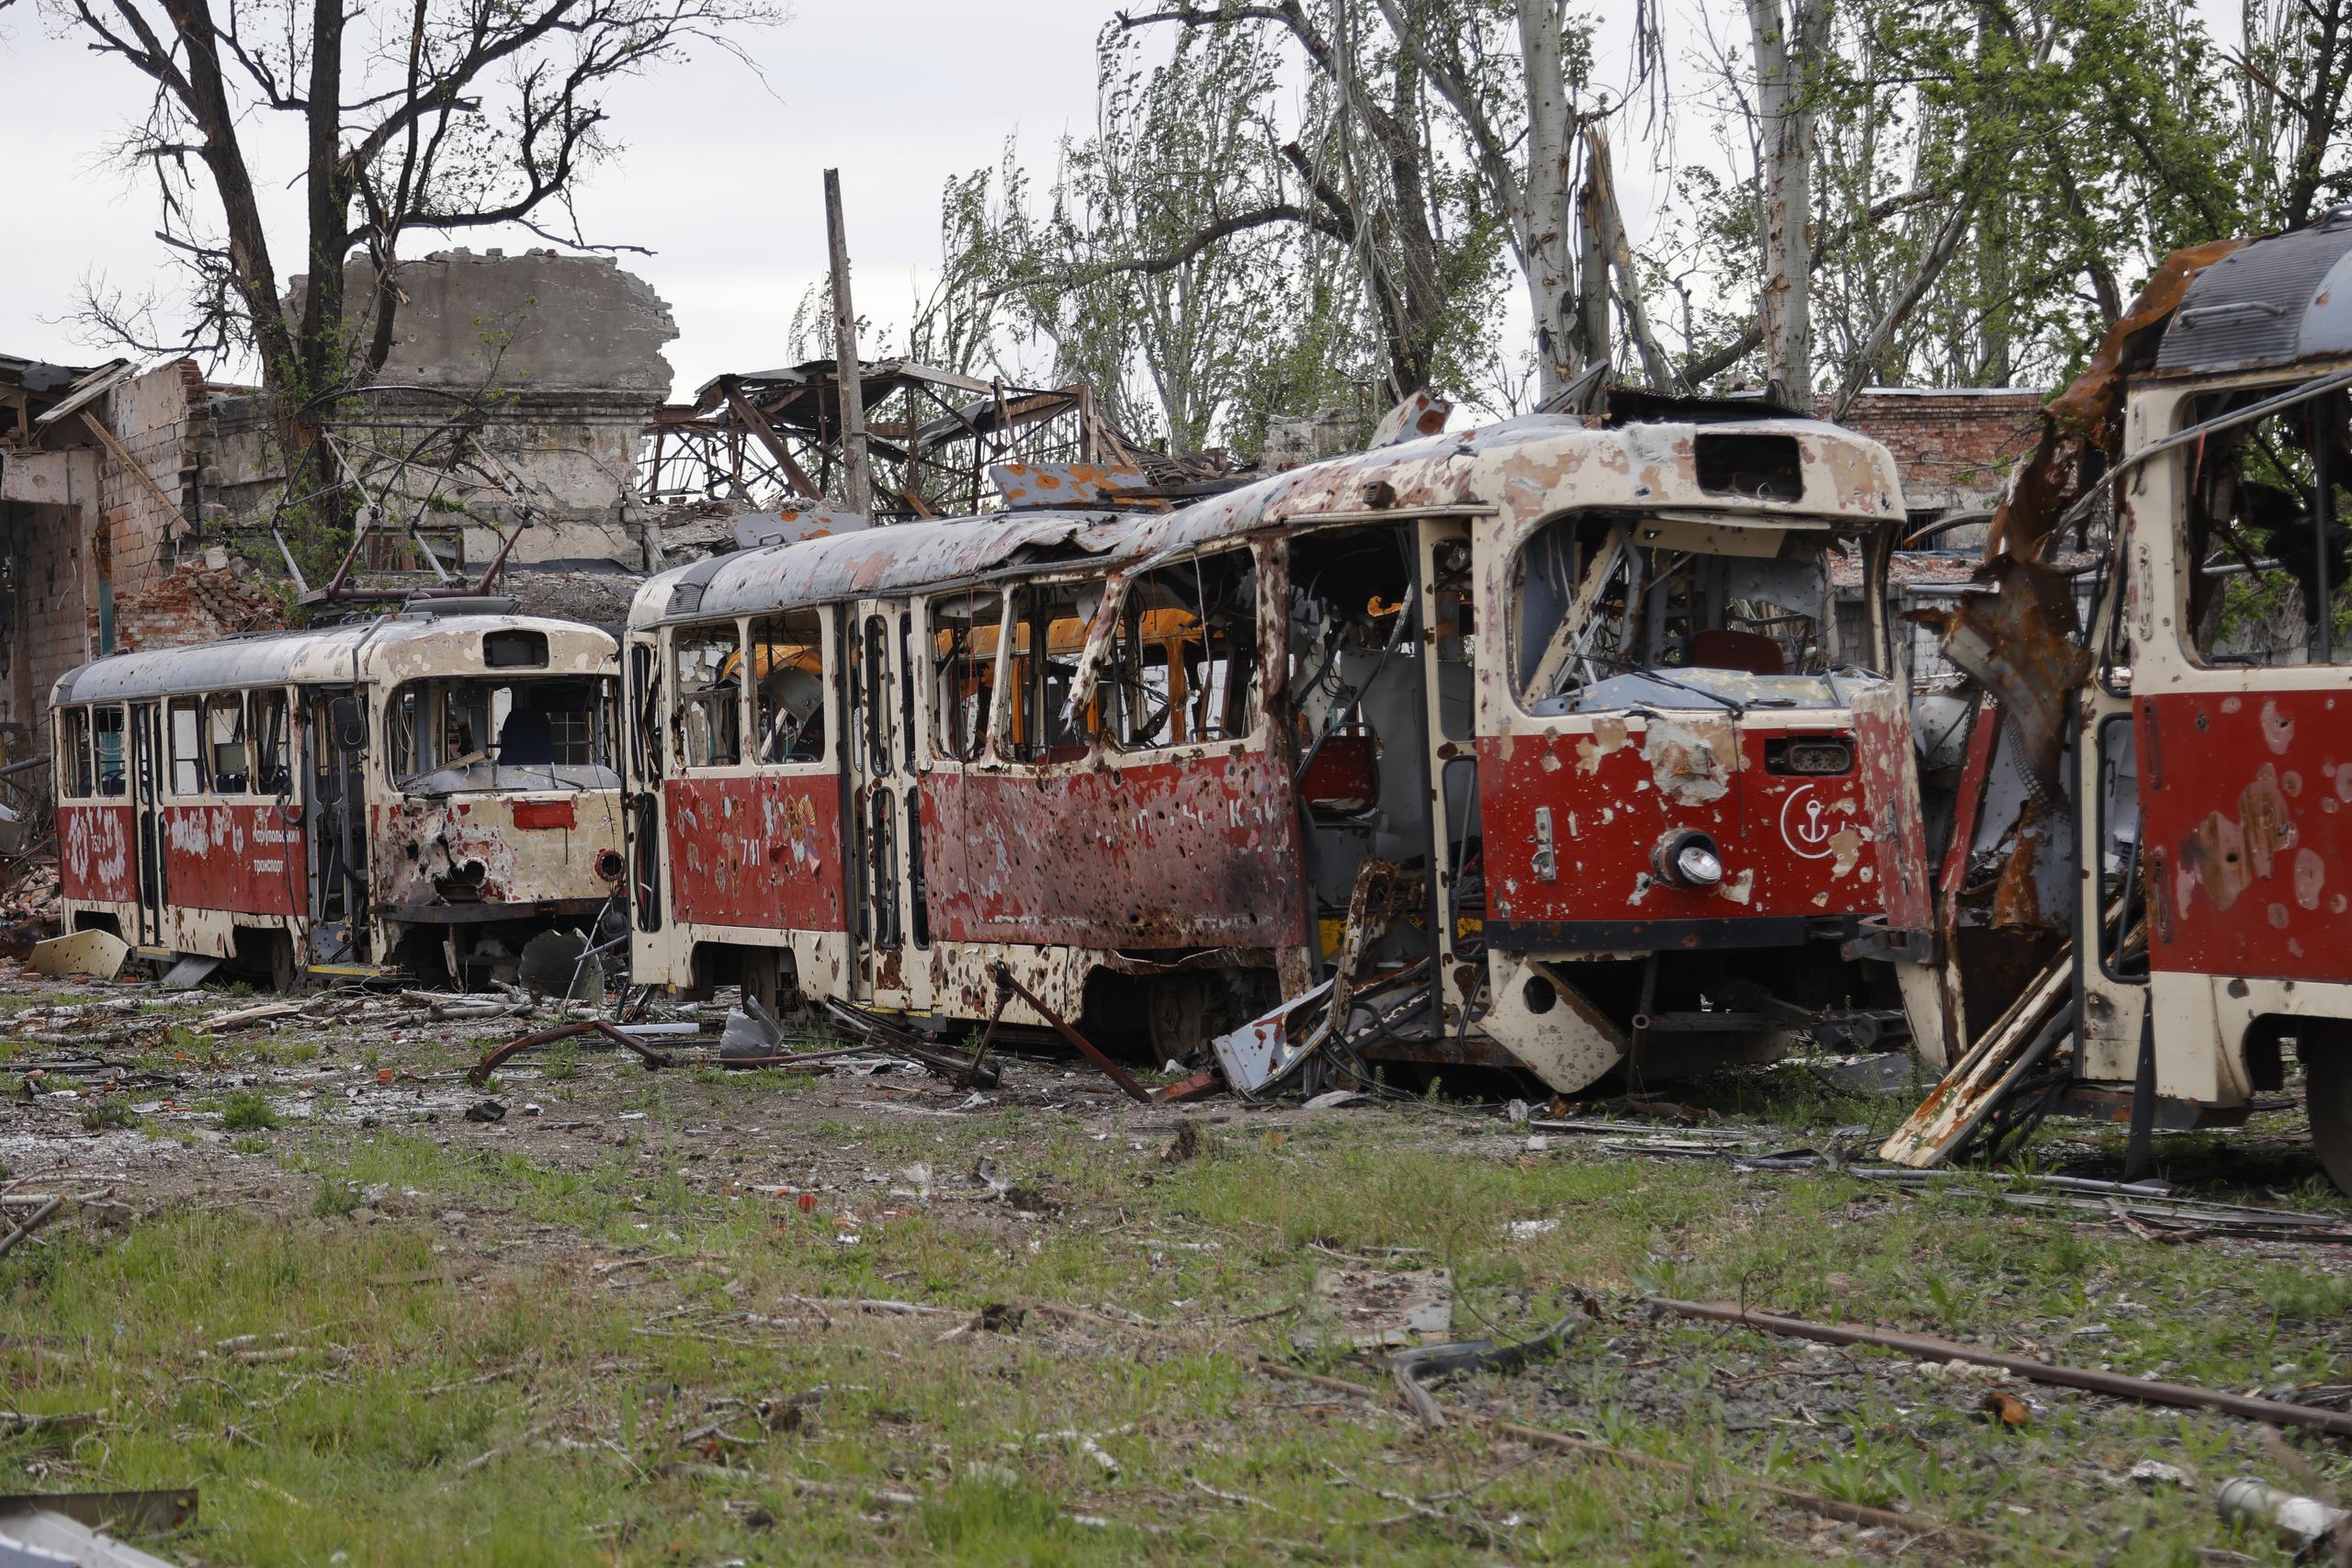 Vagones destruidos en un depósito en Mariúpol, territorio bajo el gobierno de la República Popular de Donetsk, el sábado 21 de mayo de 2022, en el este de Ucrania.